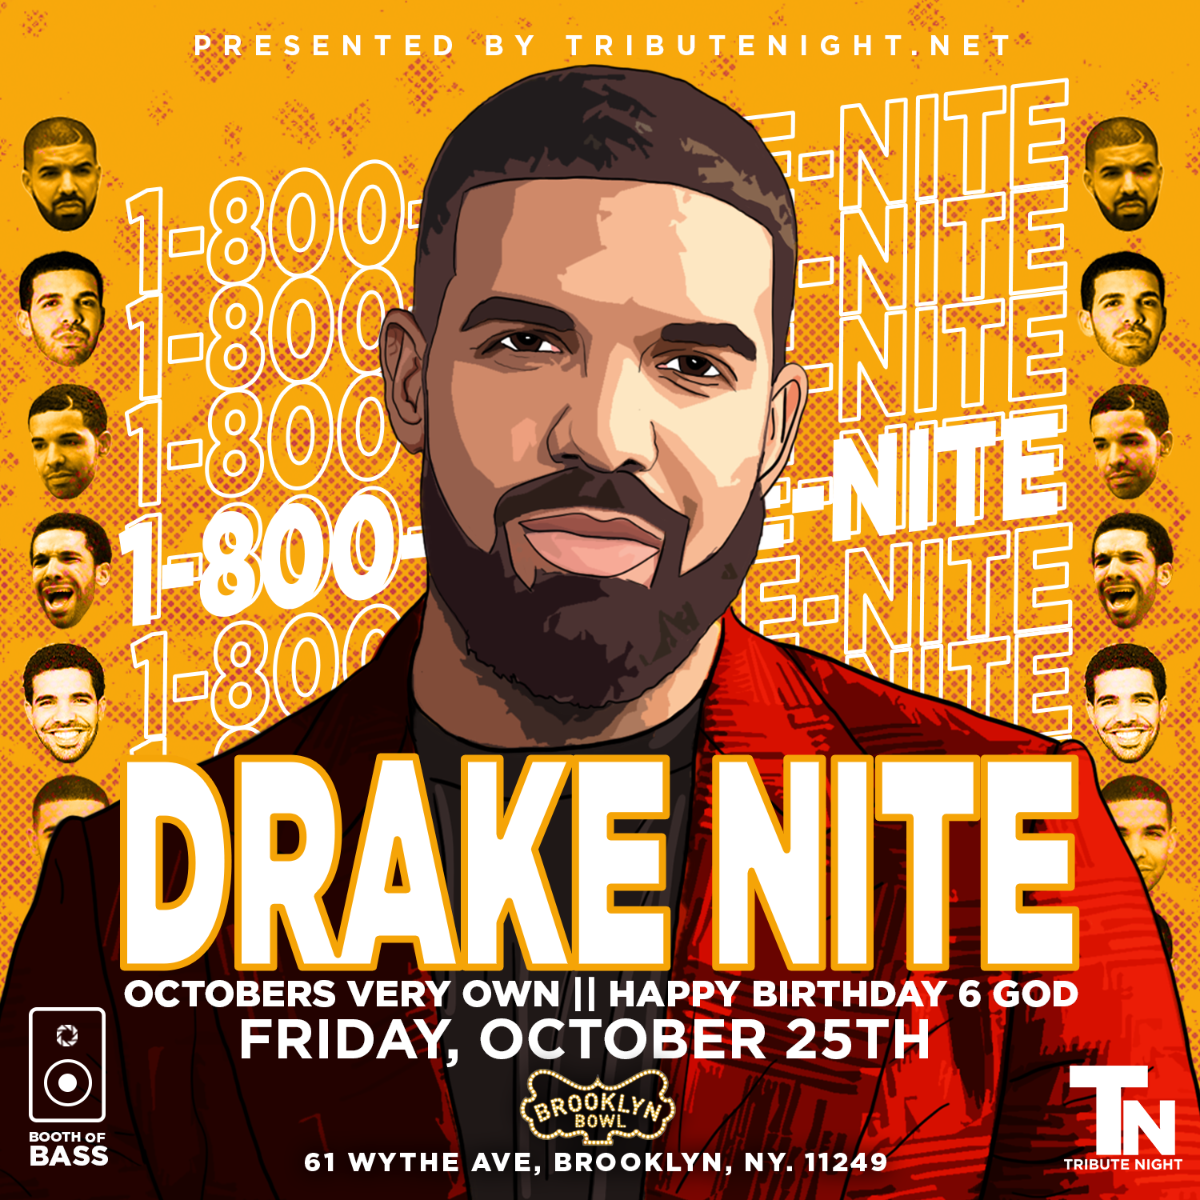 Drake Nite: Happy Birthday 6 God